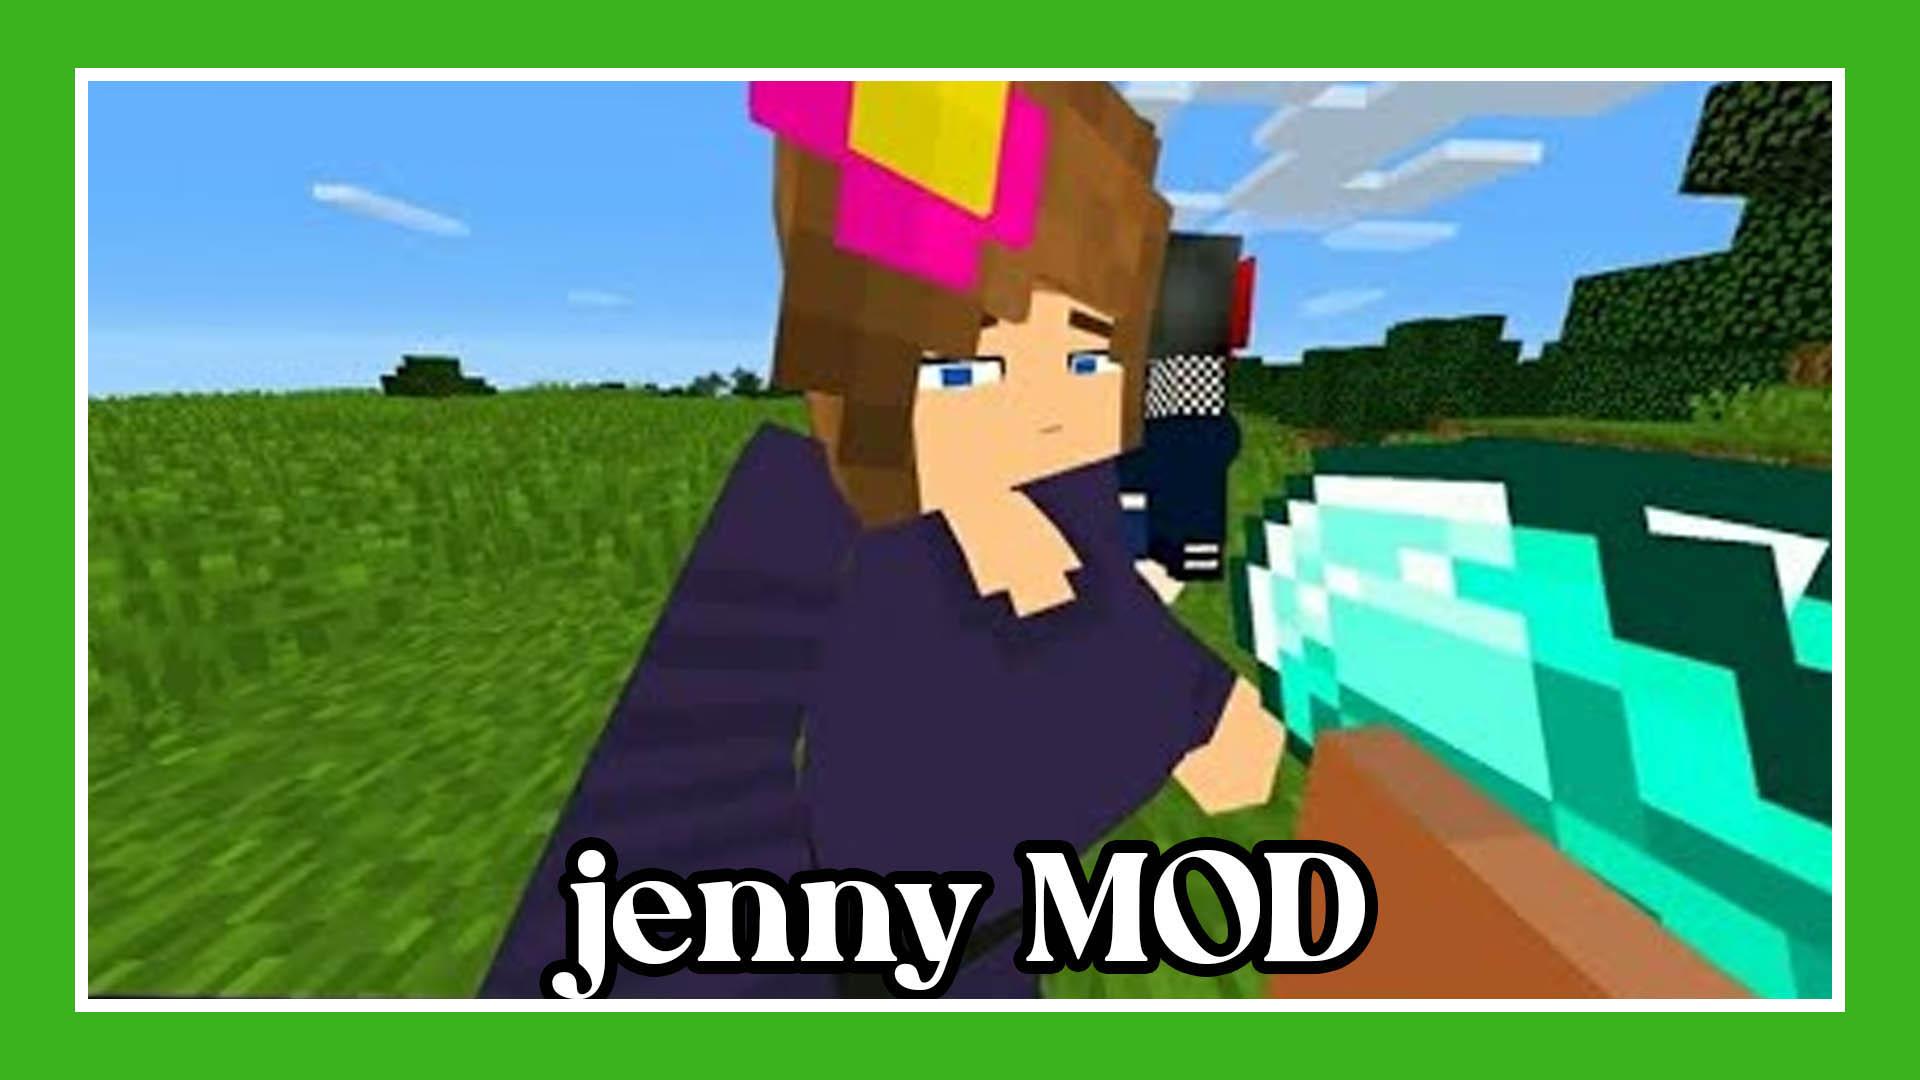 Jenny mod for minecraft mods. Jenny Mod. Майн Jenny Mod фулл. Дженни майн пе. Дженни мод в МАЙНКРАФТЕ фулл.